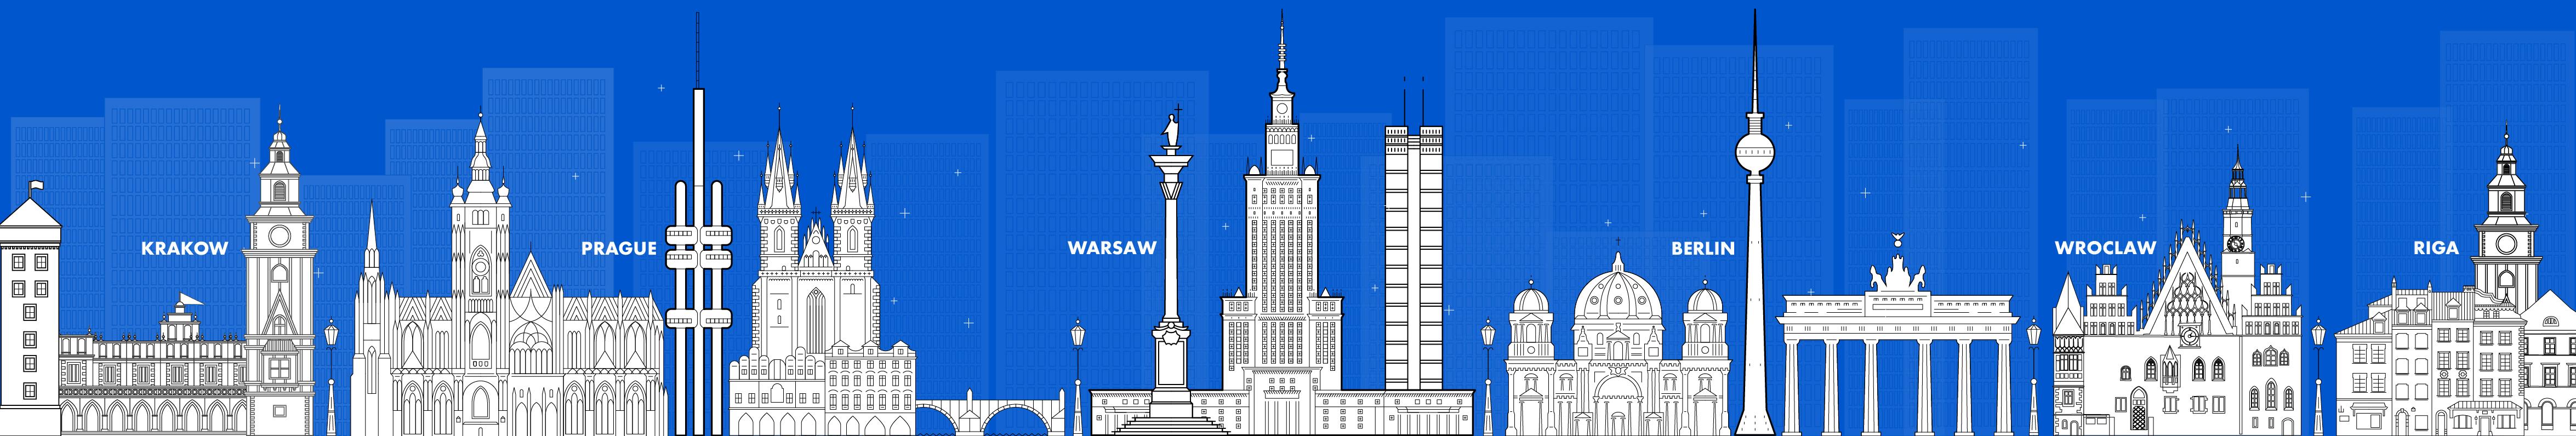 Cleanwhale / startup von Berlin / Background